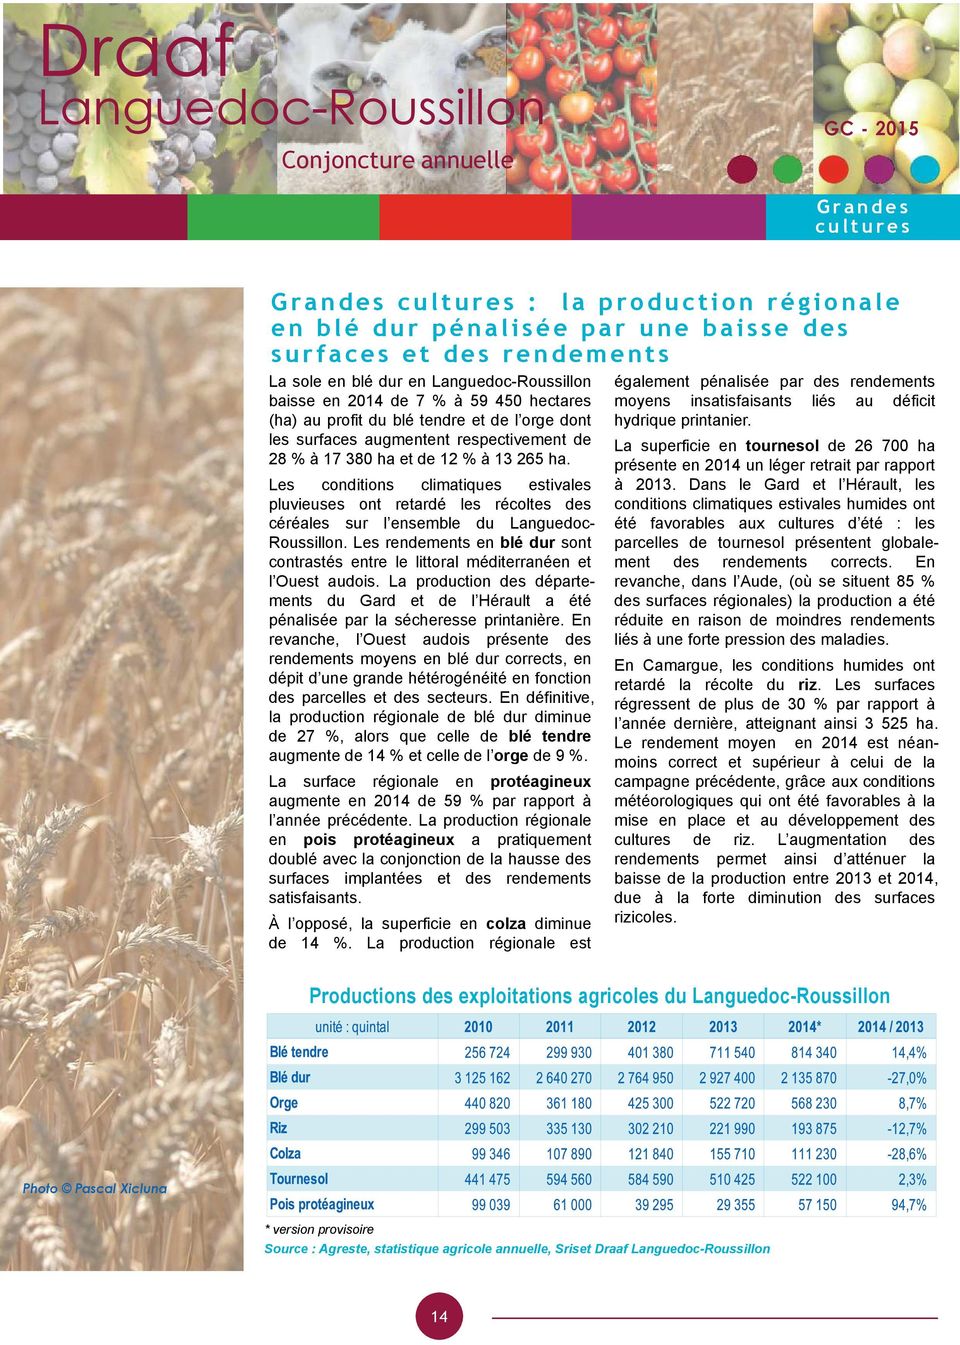 Les conditions climatiques estivales pluvieuses ont retardé les récoltes des céréales sur l ensemble du Languedoc- Roussillon.